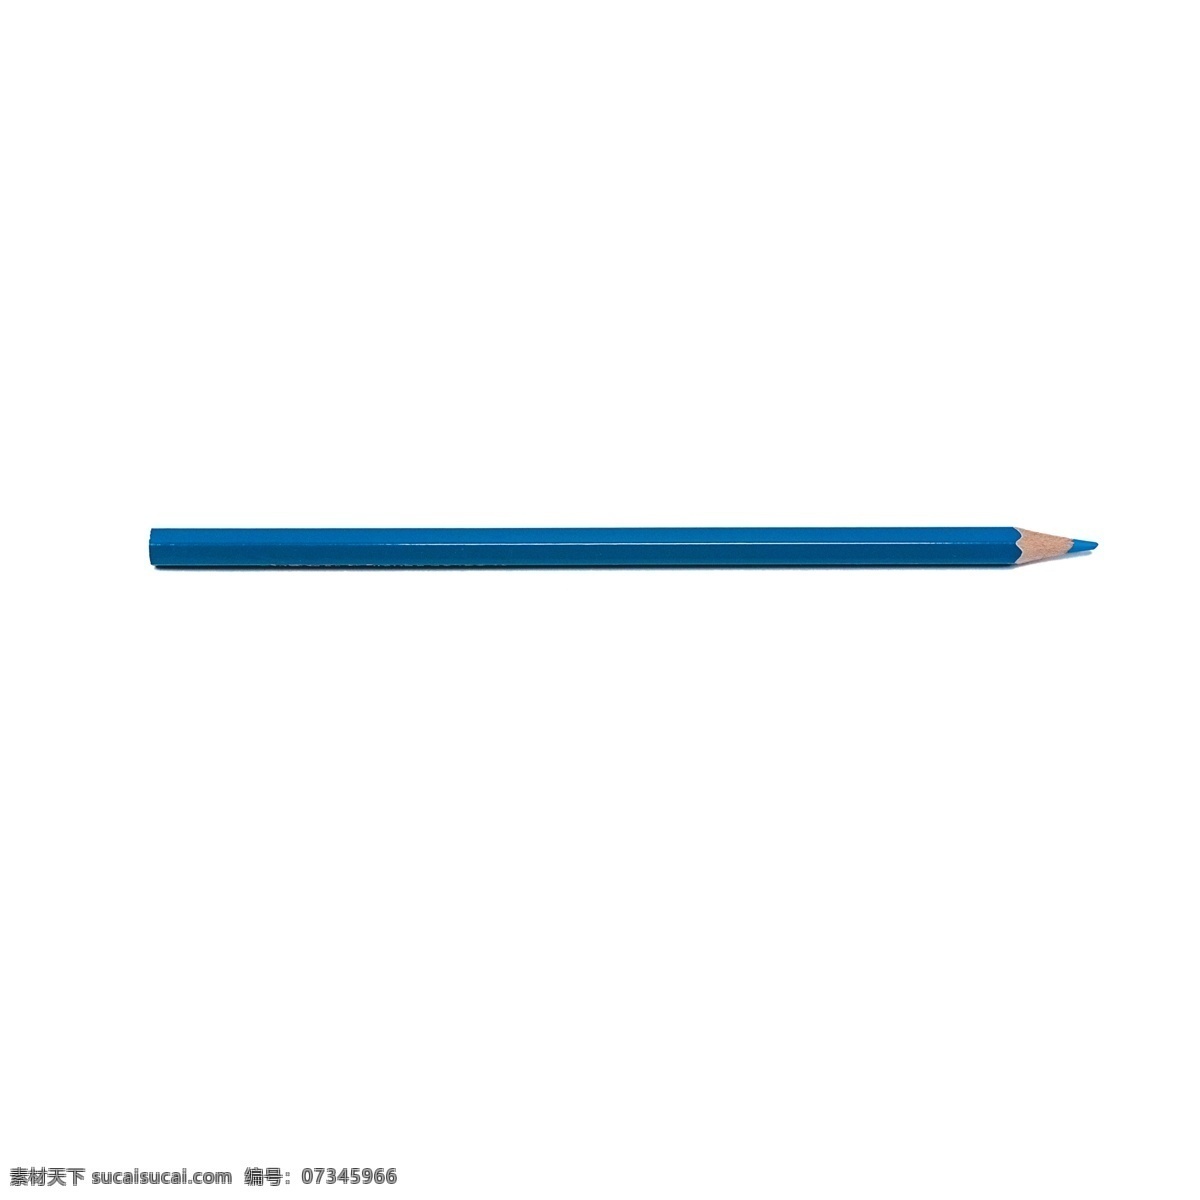 彩色铅笔 铅笔 文具 产品实物 实物产品 实物 免扣实物